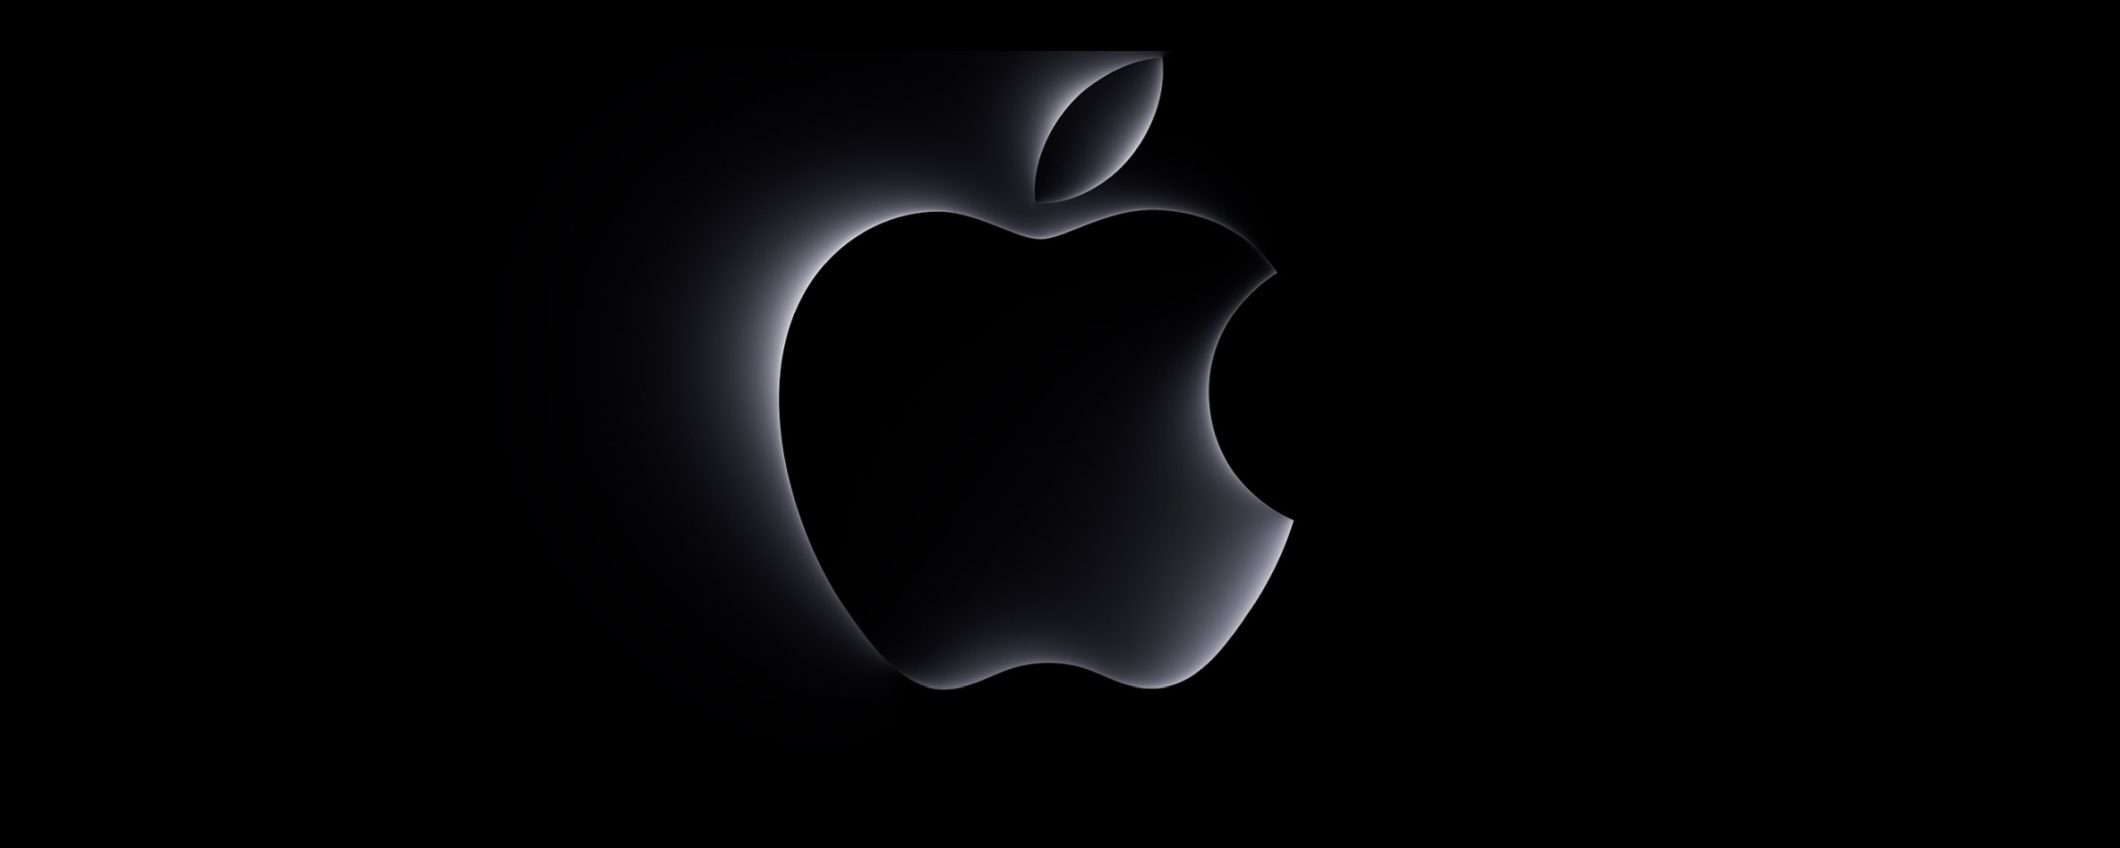 Apple: le batterie dei nuovi MacBook, iPad e Magic Keyboard